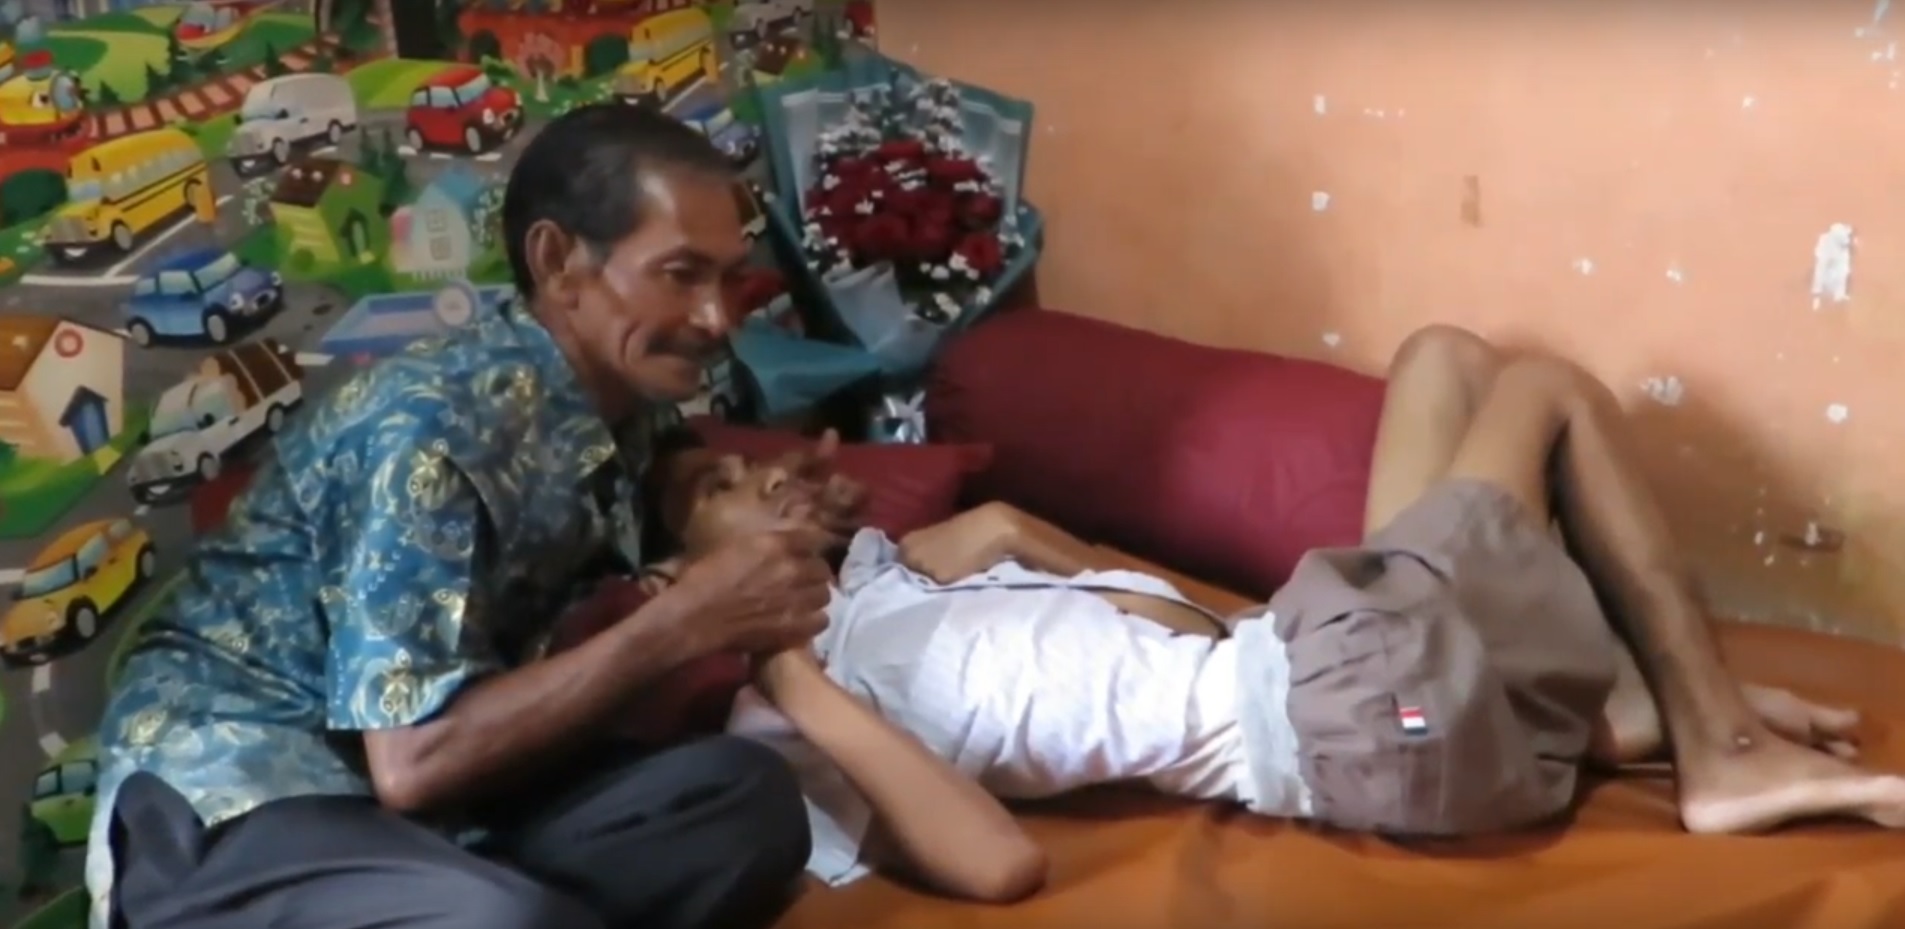 Fiki Hermansyah berbaring di rumah ditemani sang ayah (Foto / Metro TV)